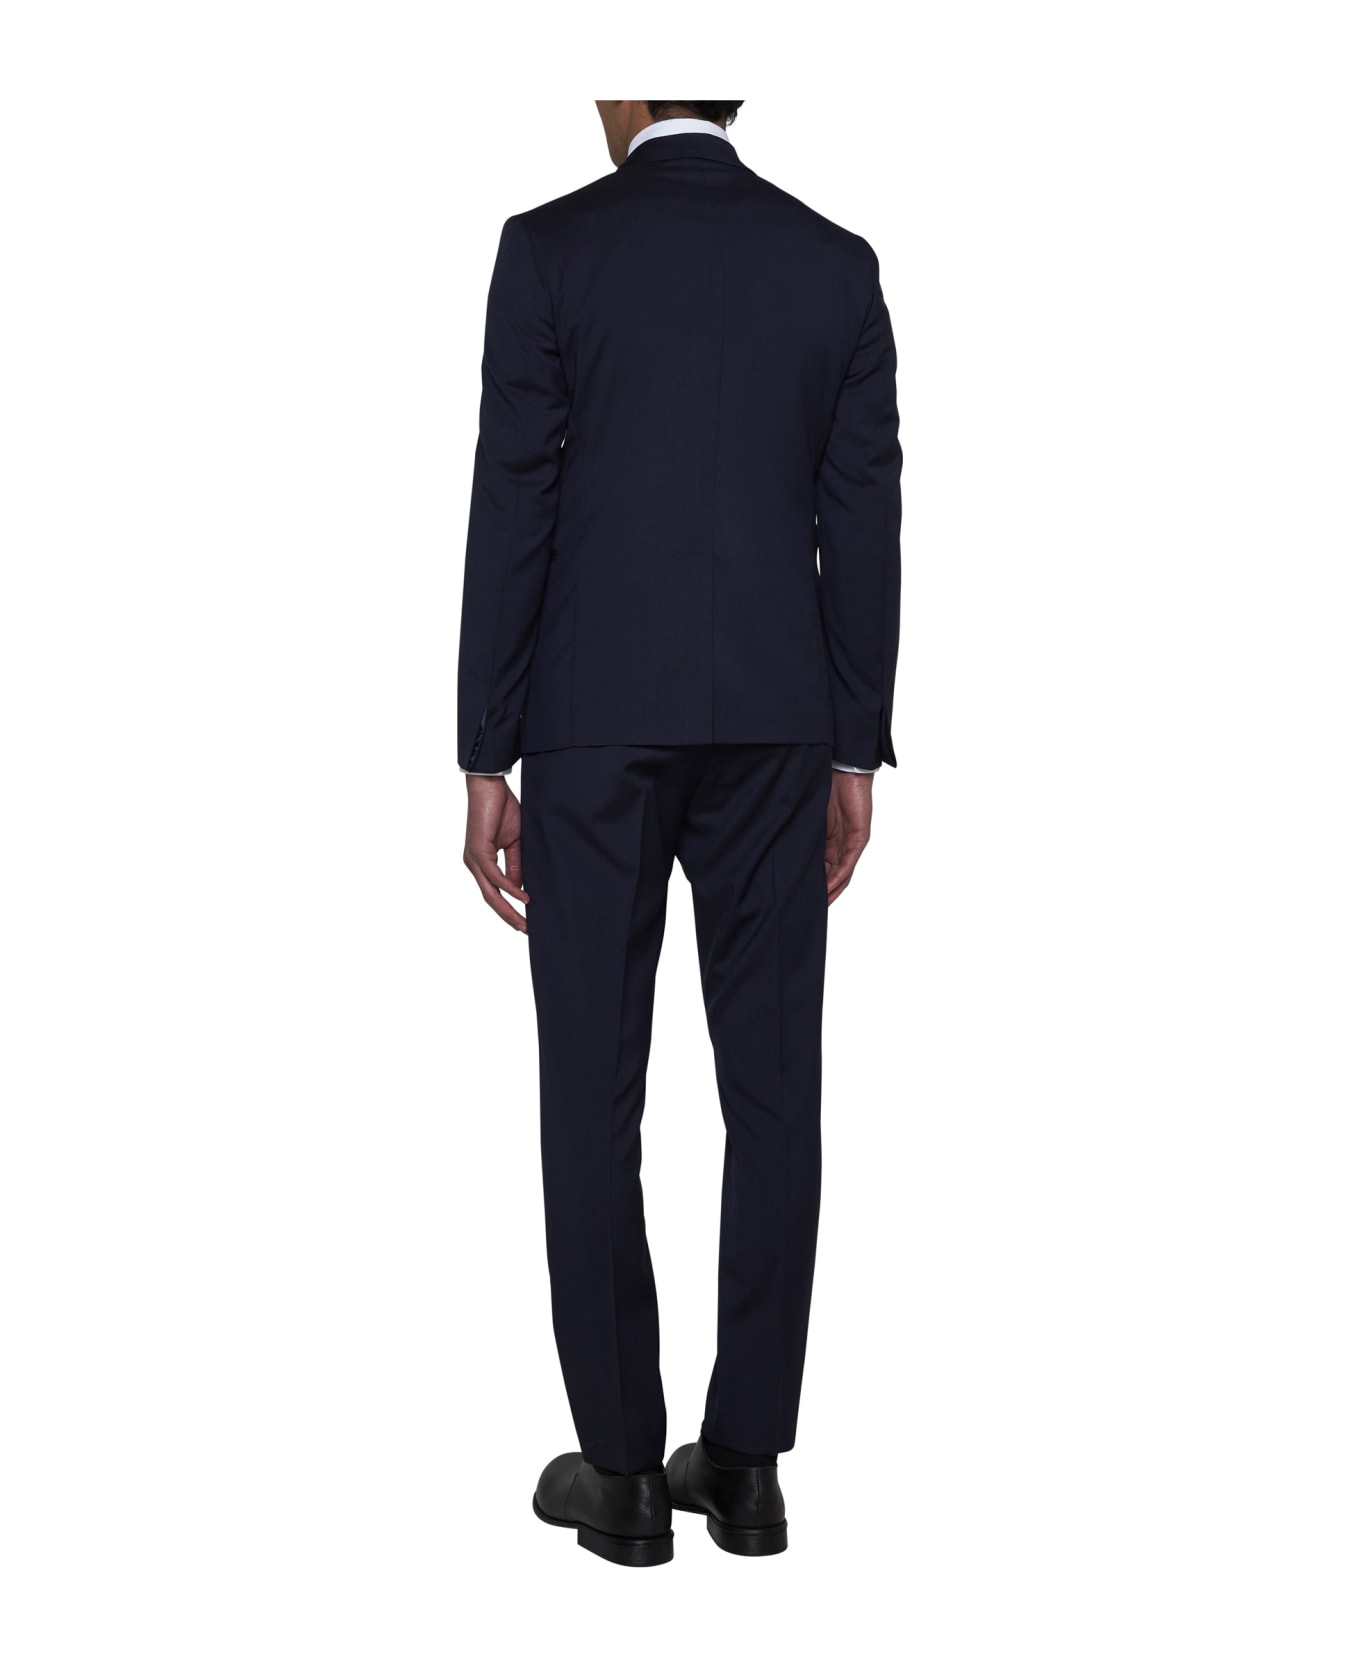 Low Brand Suit - Peacoat スーツ